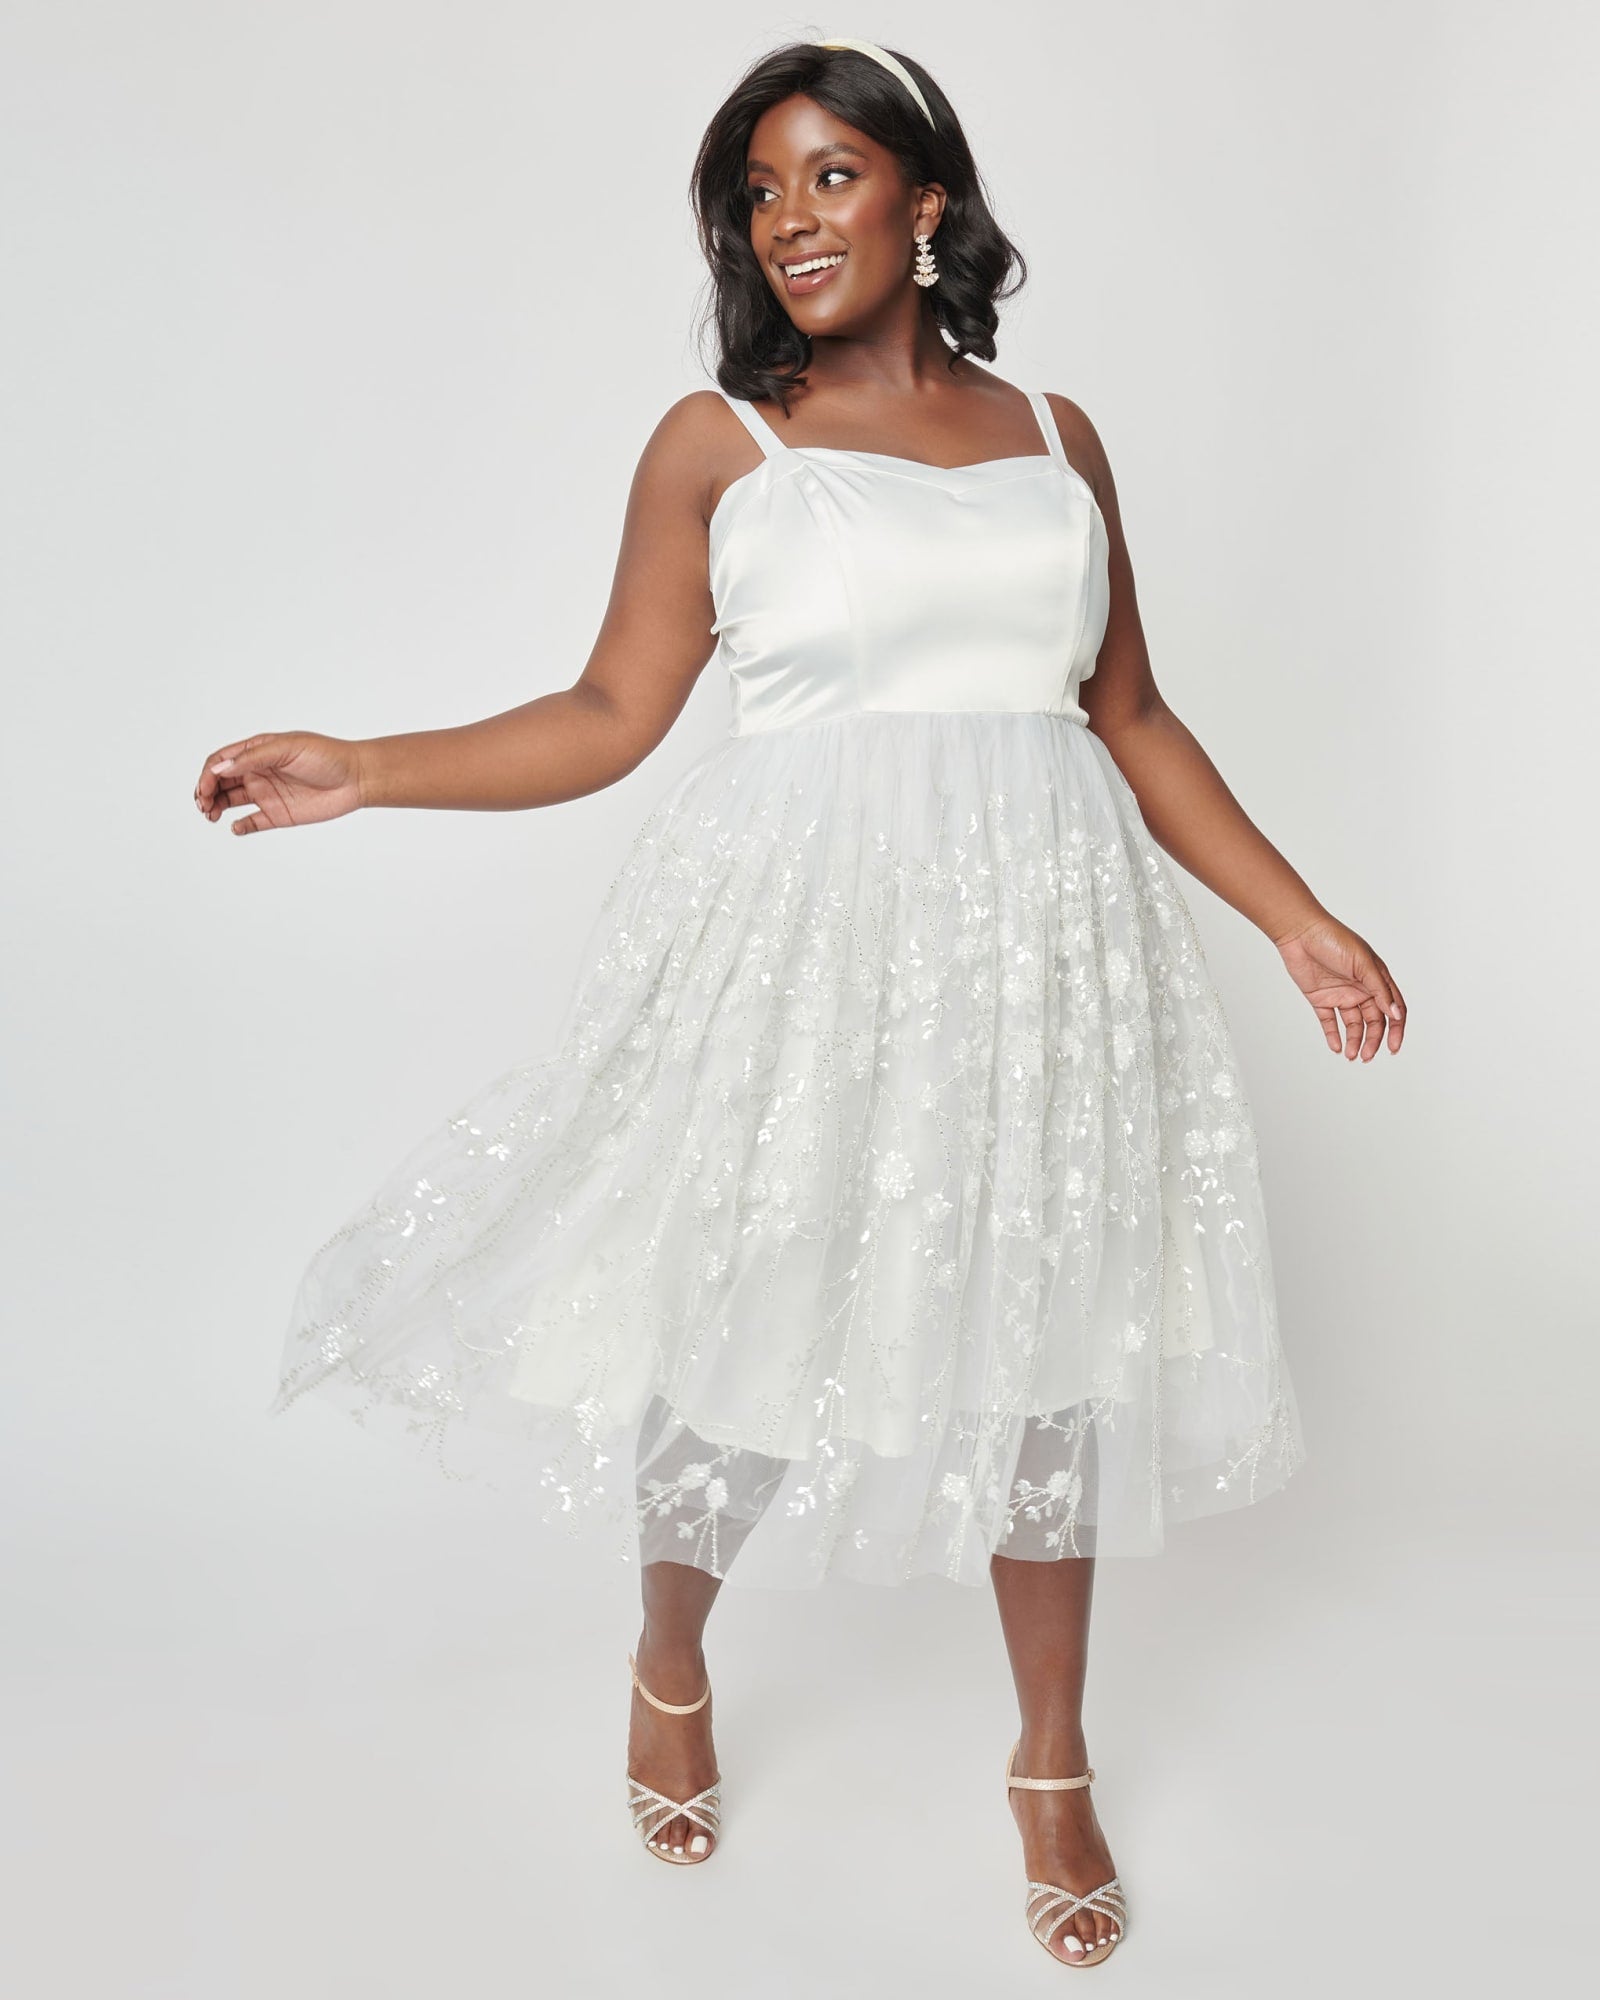 Plus Size White Tulle Dress